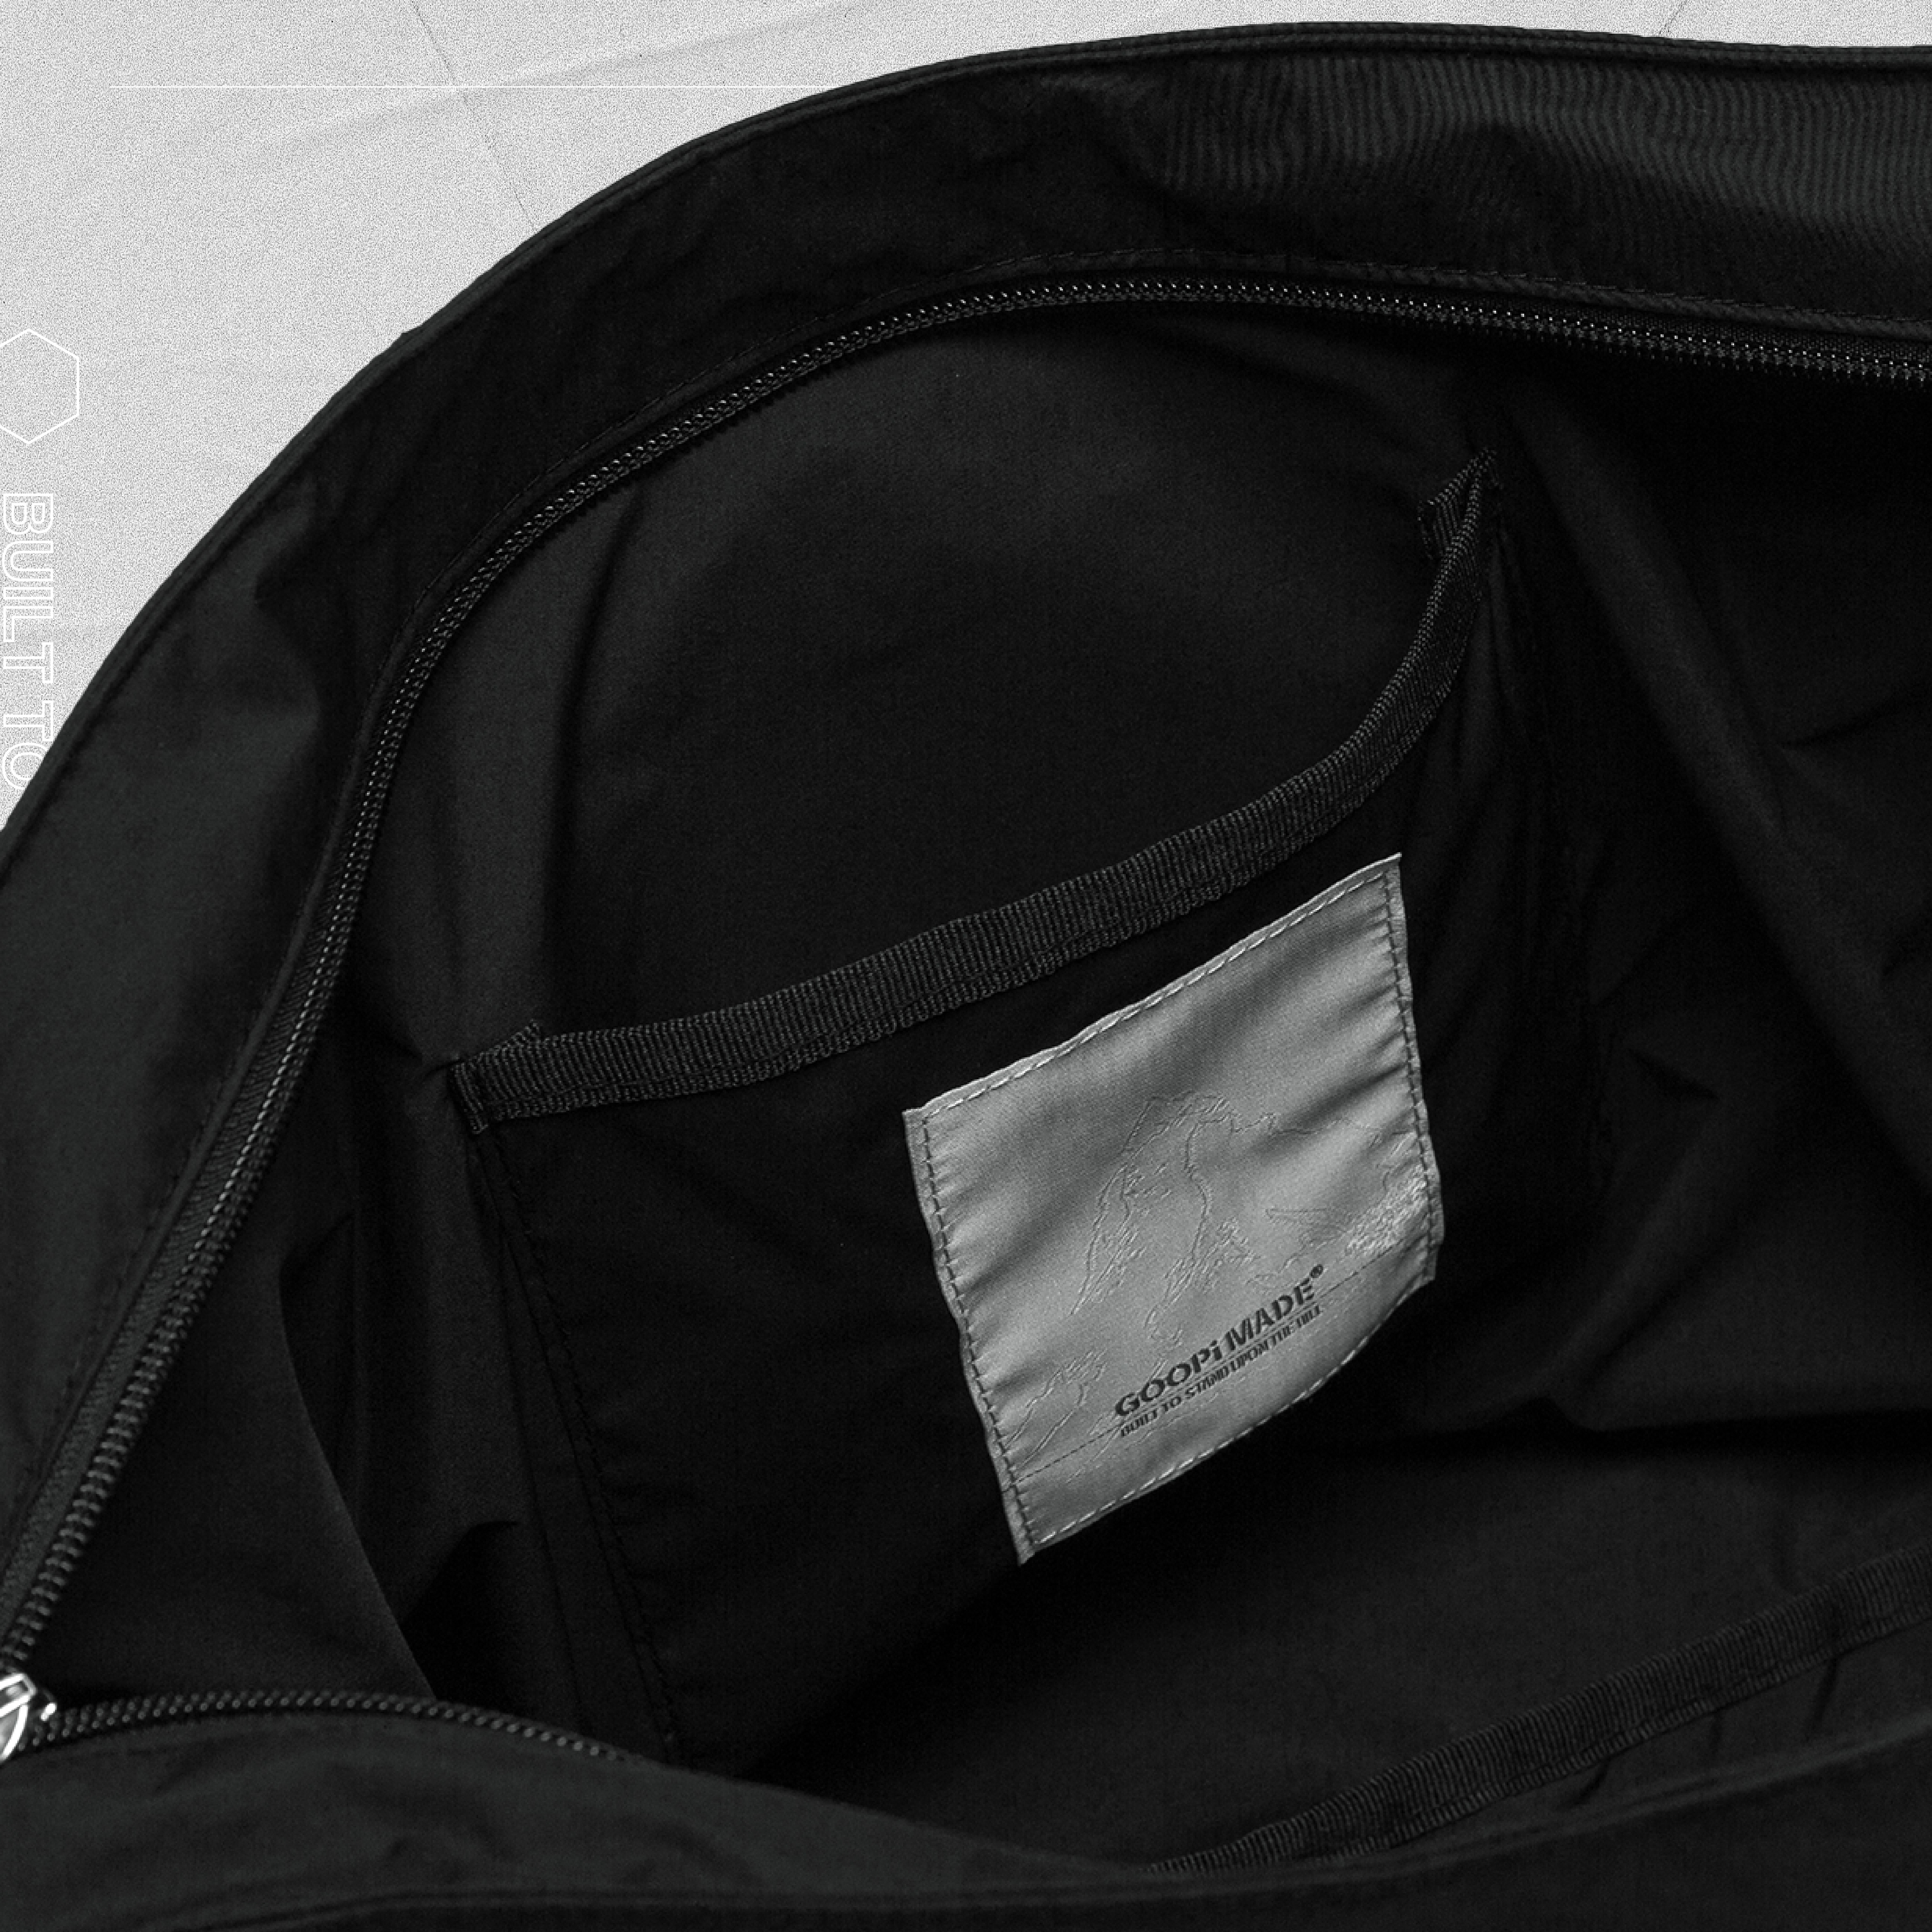 VT-02 Huge DP Shoulder Bag - Black